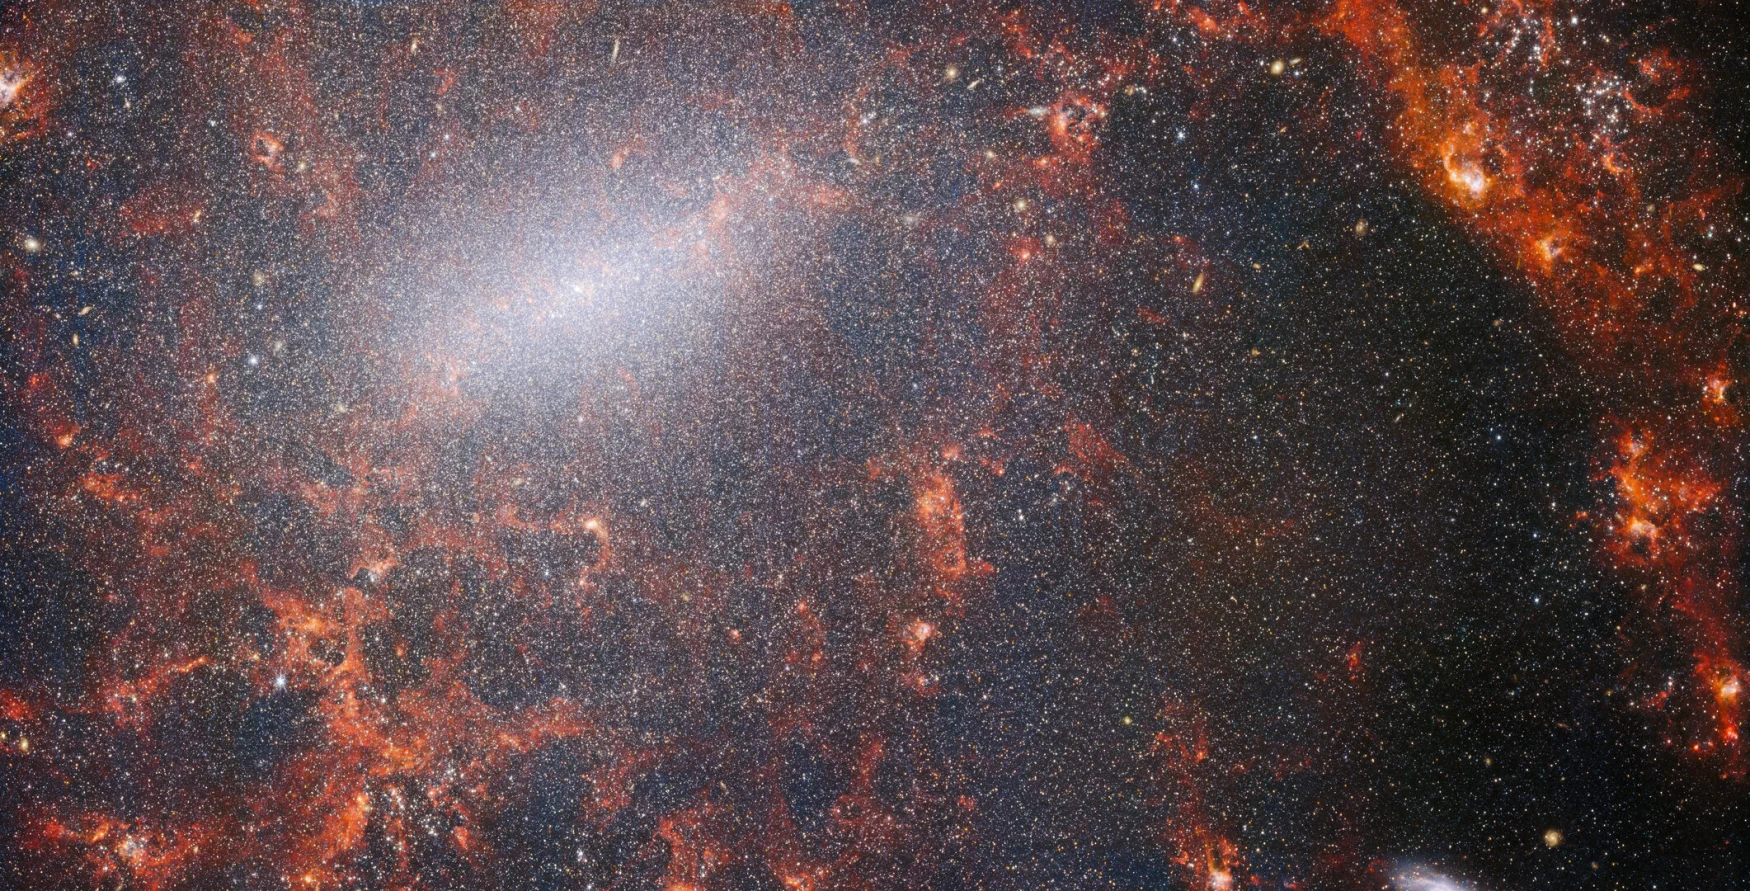 In questa immagine del telescopio spaziale James Webb della NASA/ESA/CSA si vedono sottili filamenti di polvere e ammassi di stelle luminose.  Questa vista dallo strumento NIRCam di Webb è costellata dall'enorme ammasso di stelle della galassia, il più densamente ammassato lungo la sua luminosa barra centrale, insieme a fiammeggianti nuvole rosse di gas illuminate dalle giovani stelle all'interno.  Queste stelle scintillanti appartengono alla galassia a spirale barriera NGC 5068, che si trova a circa 17 milioni di anni luce dalla Terra nella costellazione della Vergine.  Questa immagine di NGC 5068 fa parte di una campagna per creare un tesoro astronomico, un deposito per le osservazioni della formazione stellare nelle galassie vicine.  Le gemme precedenti di questa collezione possono essere viste qui e qui.  Queste osservazioni sono particolarmente preziose per gli astronomi per due motivi.  La prima è che la formazione stellare è alla base di molte aree dell'astronomia, dalla fisica dei deboli plasmi interstellari all'evoluzione di intere galassie.  Osservando la formazione stellare nelle galassie vicine, gli astronomi sperano di avviare un importante progresso scientifico con alcuni dei primi dati disponibili da Webb.  La seconda ragione è che le osservazioni di Webb si basano su altri studi che utilizzano telescopi tra cui il telescopio spaziale Hubble della NASA/ESA e alcuni dei più capaci osservatori terrestri del mondo.  Webb ha raccolto immagini di 19 galassie vicine in formazione stellare, che gli astronomi sono stati poi in grado di combinare con i cataloghi di Hubble di 10.000 ammassi stellari, hanno mappato spettralmente 20.000 nebulose a emissione stellare dal Very Large Telescope (VLT) e ne hanno osservate 12.000 da nebulose oscure.  , nubi molecolari dense identificate dall'Atacama Large Millimeter/Submillimeter Array (ALMA).  Queste osservazioni abbracciano lo spettro elettromagnetico e offrono agli astronomi un'opportunità senza precedenti di mettere insieme i dettagli della formazione stellare.  Questa immagine nel vicino infrarosso della galassia è piena dell'enorme ammasso di stelle antiche che costituiscono il nucleo di NGC 5068. La nitida vista di NIRCam consente agli astronomi di scrutare attraverso il gas e la polvere della galassia per esaminarne le stelle più da vicino.  Lungo il percorso dei bracci a spirale si trovano nubi di polvere dense e luminose: si tratta delle regioni H II, ammassi di idrogeno gassoso dove si stanno formando nuove stelle.  Le stelle attive ed energetiche ionizzano l'idrogeno intorno a loro, che, se combinato con l'emissione di polvere calda, produce questo bagliore rossastro.  Le regioni H II sono un ottimo bersaglio per gli astronomi e gli strumenti di Webb sono gli strumenti perfetti per esaminarle, dando come risultato questa immagine. [Image Description: A close-in image of a spiral galaxy, showing its core and part of a spiral arm. At this distance thousands upon thousands of tiny stars that make up the galaxy can be seen. The stars are most dense in a whitish bar that forms the core, and less dense out from that towards the arm. Bright red gas clouds follow the twist of the galaxy and the spiral arm.] Collegamenti NGC 5068 (NIRCam + immagine MIRI) 